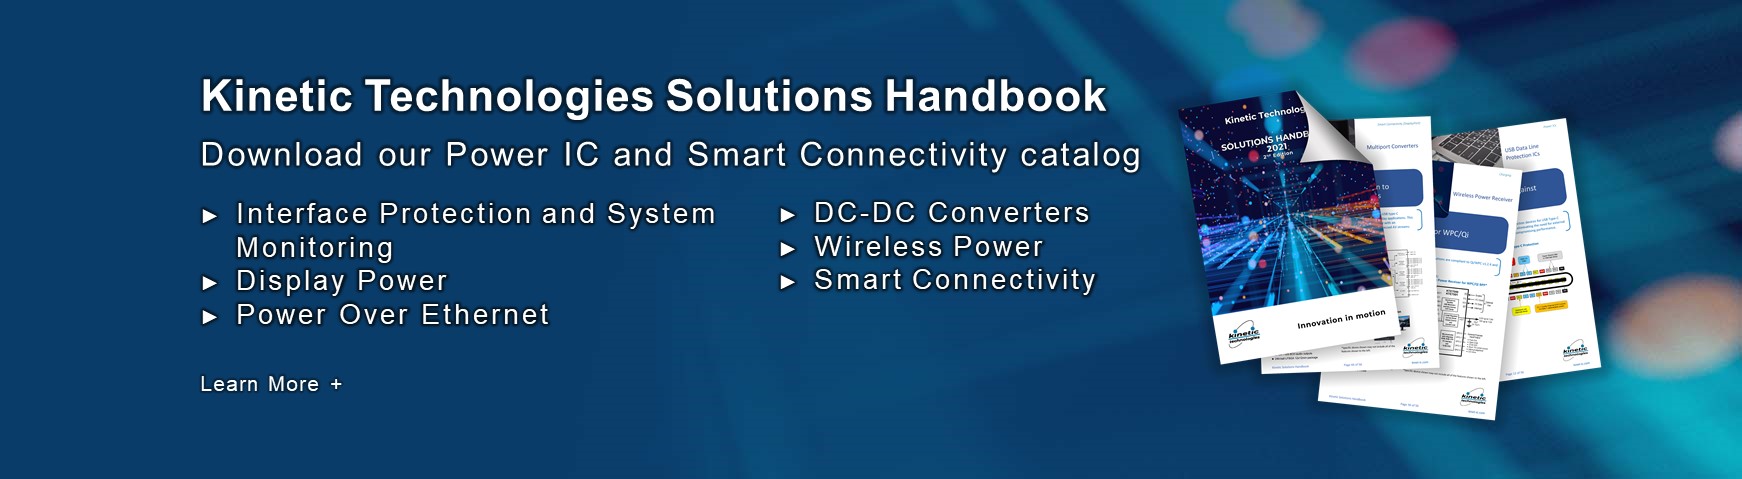 Solutions Handbook